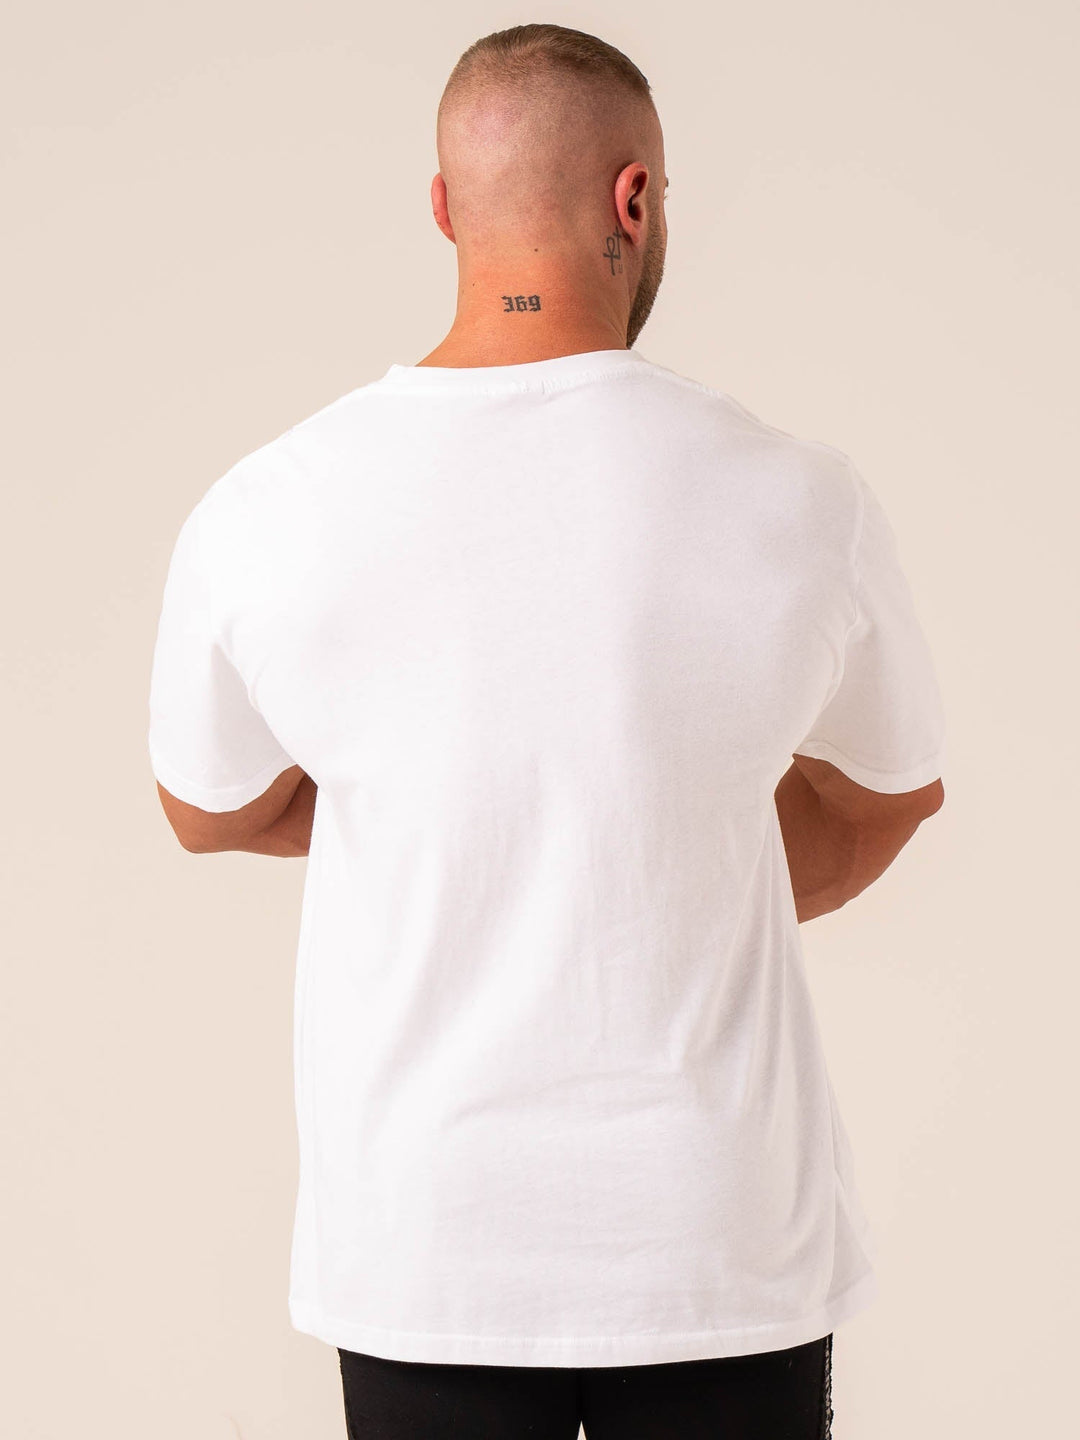 Varsity Oversized T-Shirt - White Clothing Ryderwear 